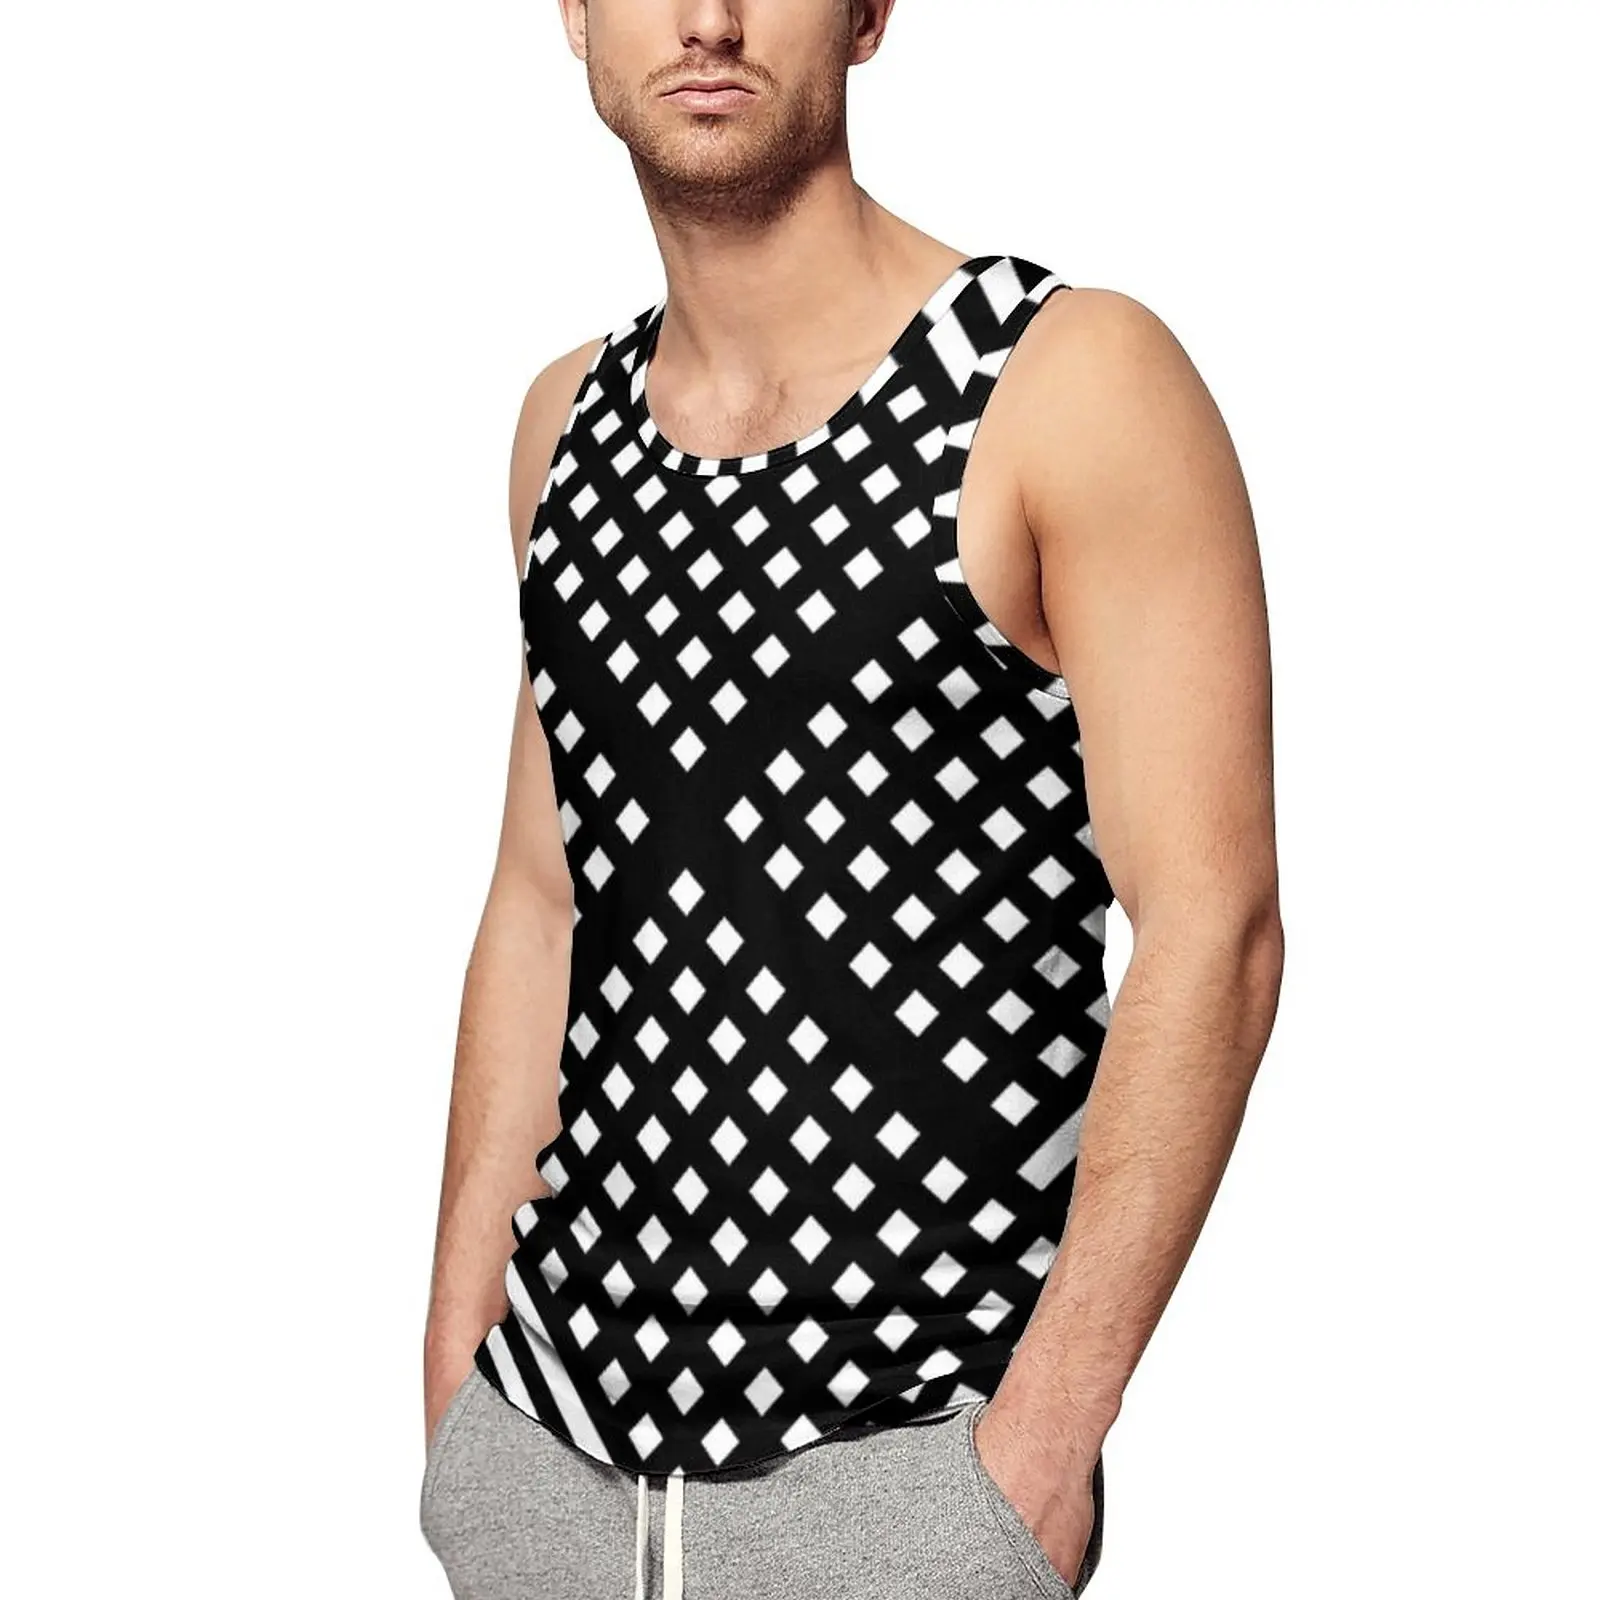 

Майка мужская в черно-белую полоску, топ с абстрактным геометрическим рисунком, модная рубашка оверсайз без рукавов для тренировок на каждый день